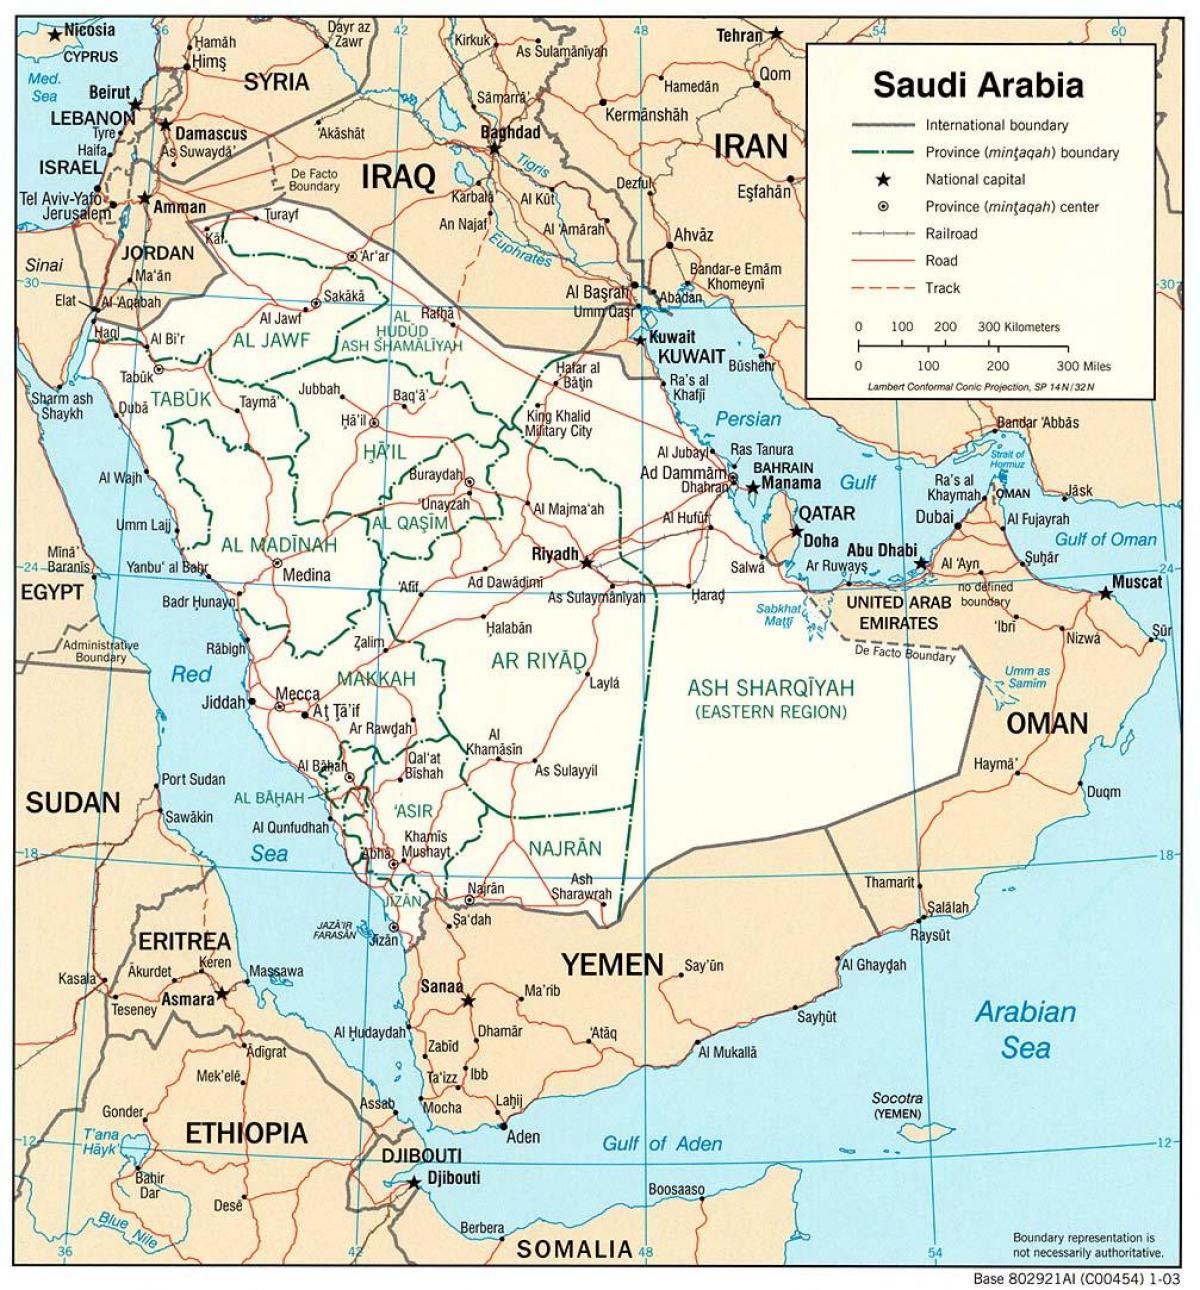 सऊदी अरब में सड़कों के नक्शे